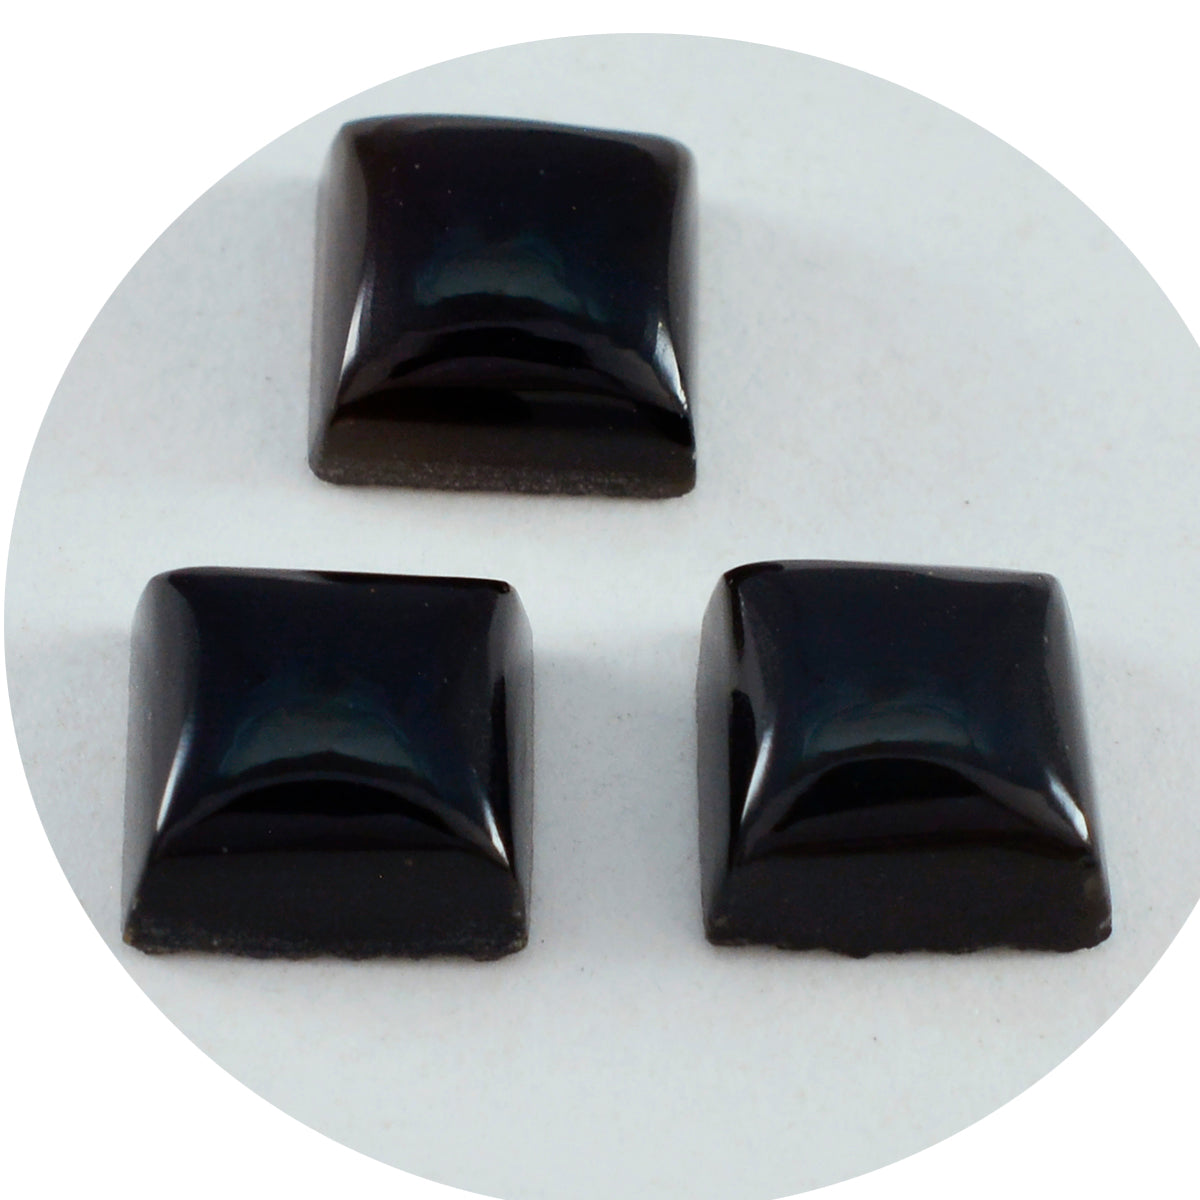 Riyogems 1 cabochon d'onyx noir de forme carrée de 14x14mm, pierre précieuse de qualité impressionnante